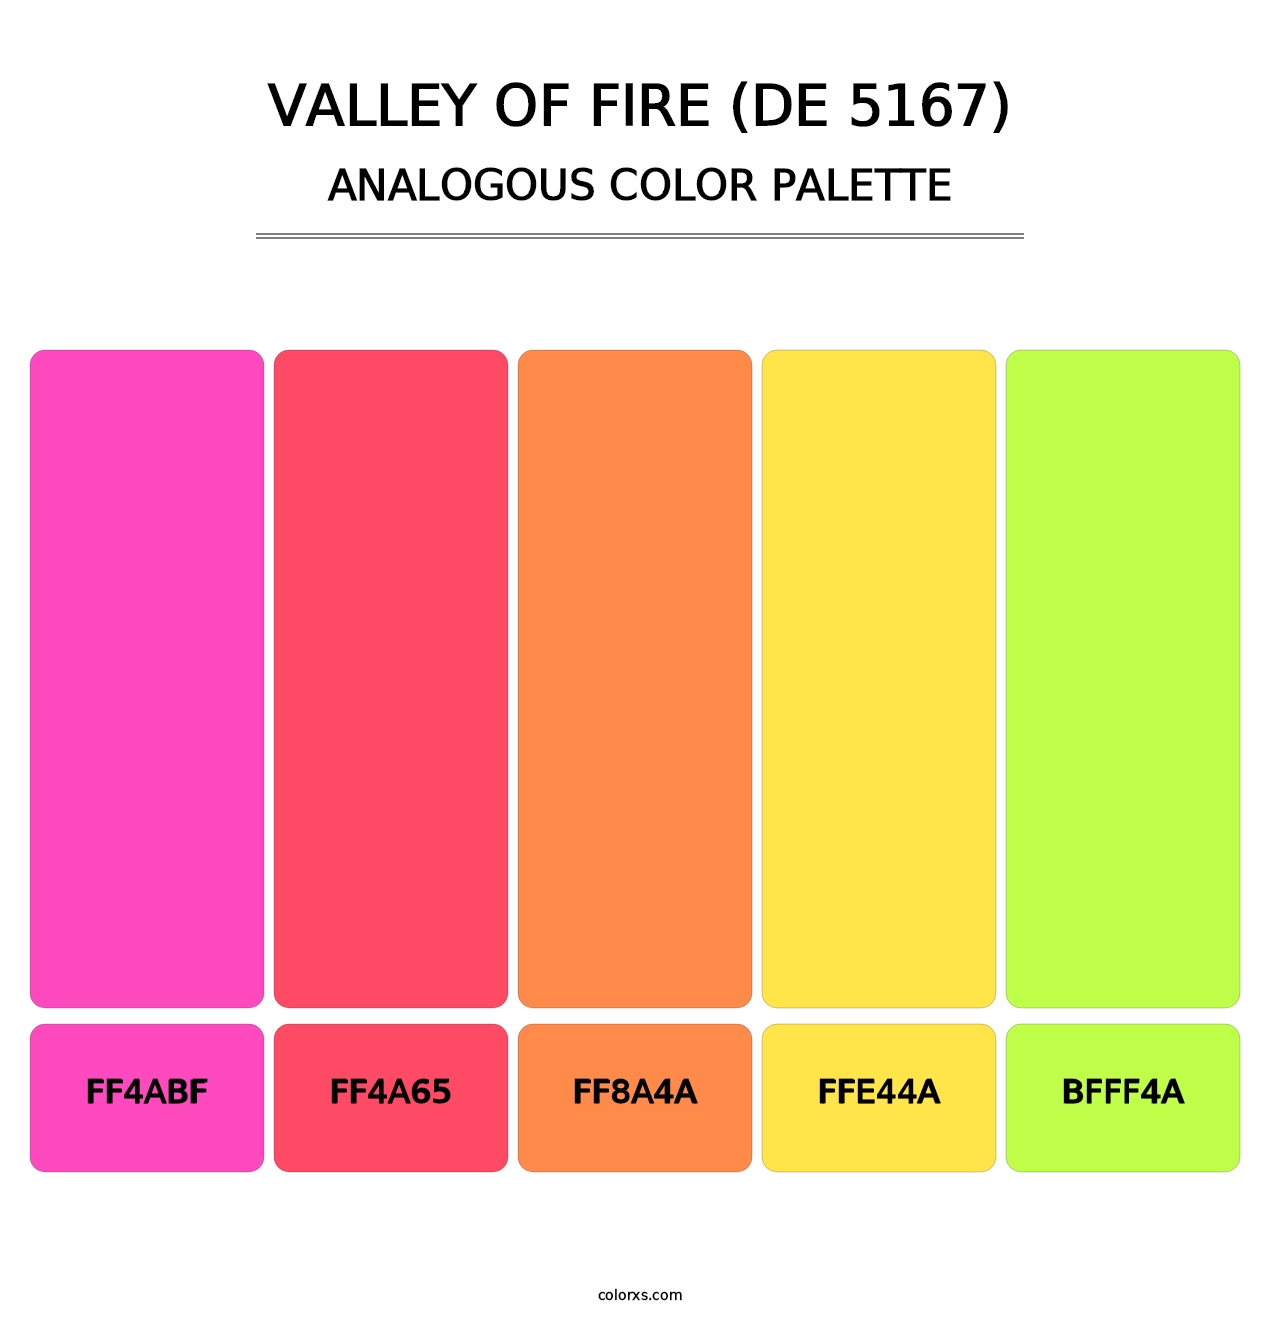 Valley of Fire (DE 5167) - Analogous Color Palette